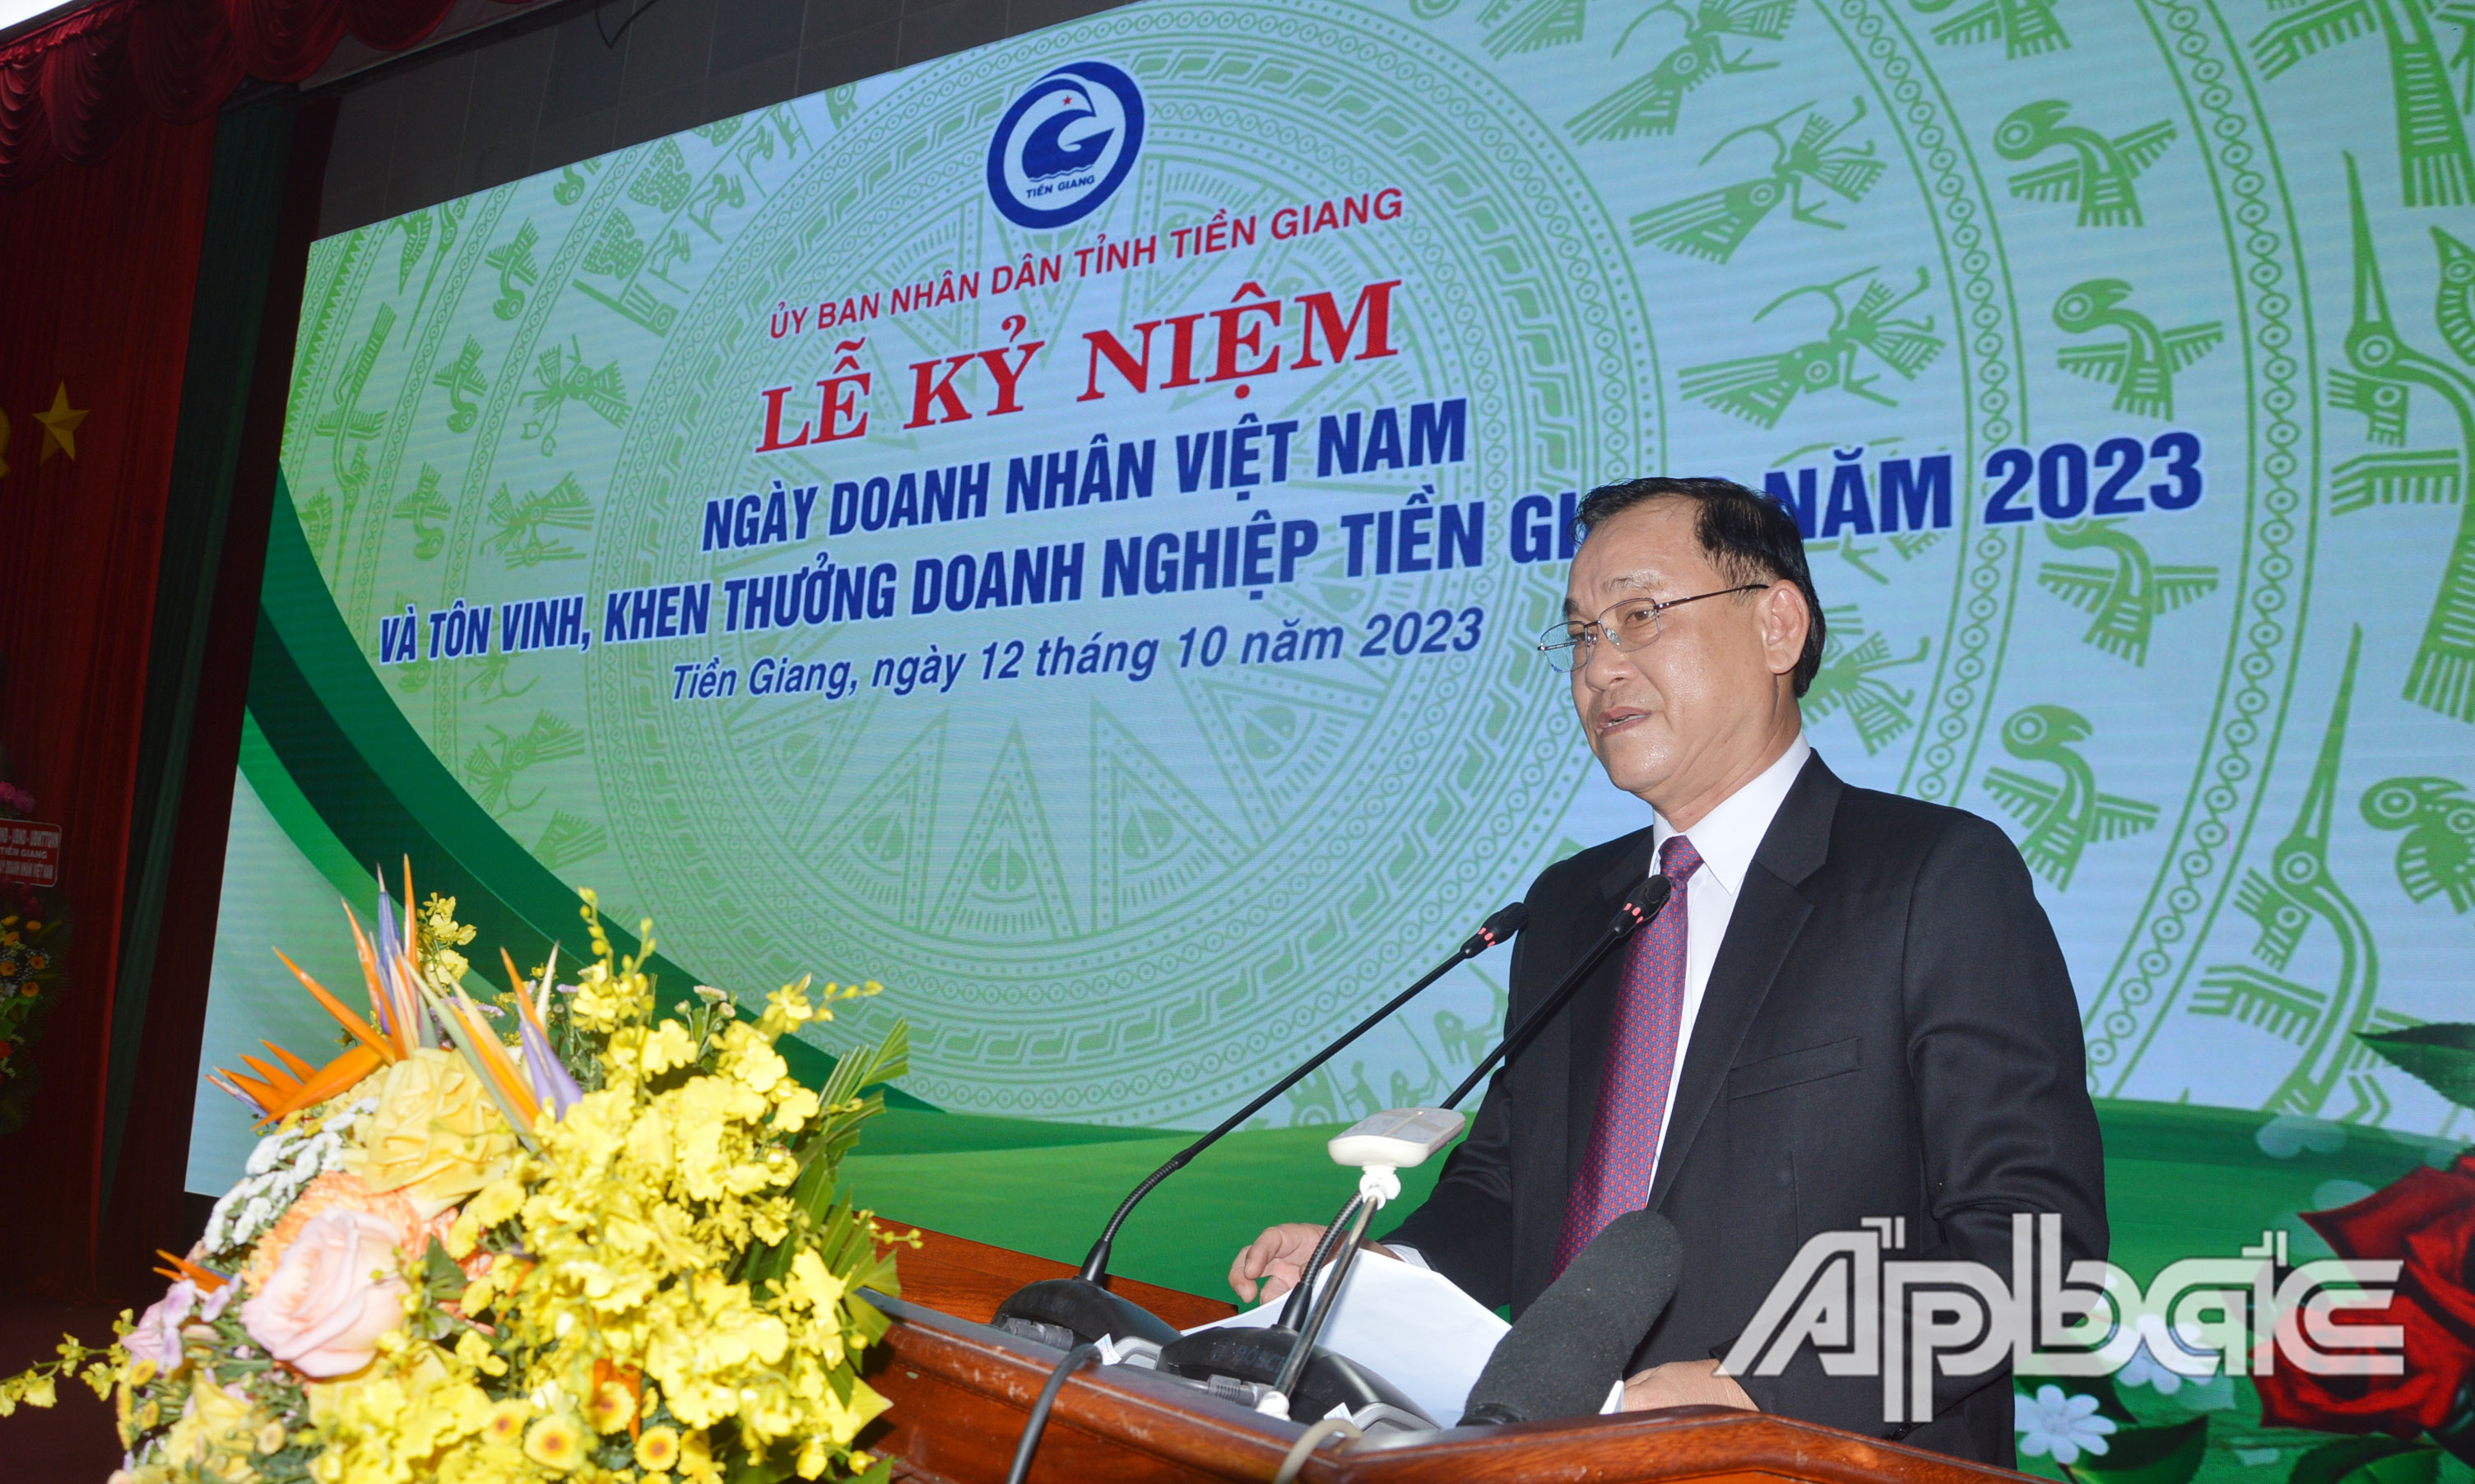 Đồng chí Nguyễn Văn Vĩnh phát biểu tại Lễ kỷ niệm.